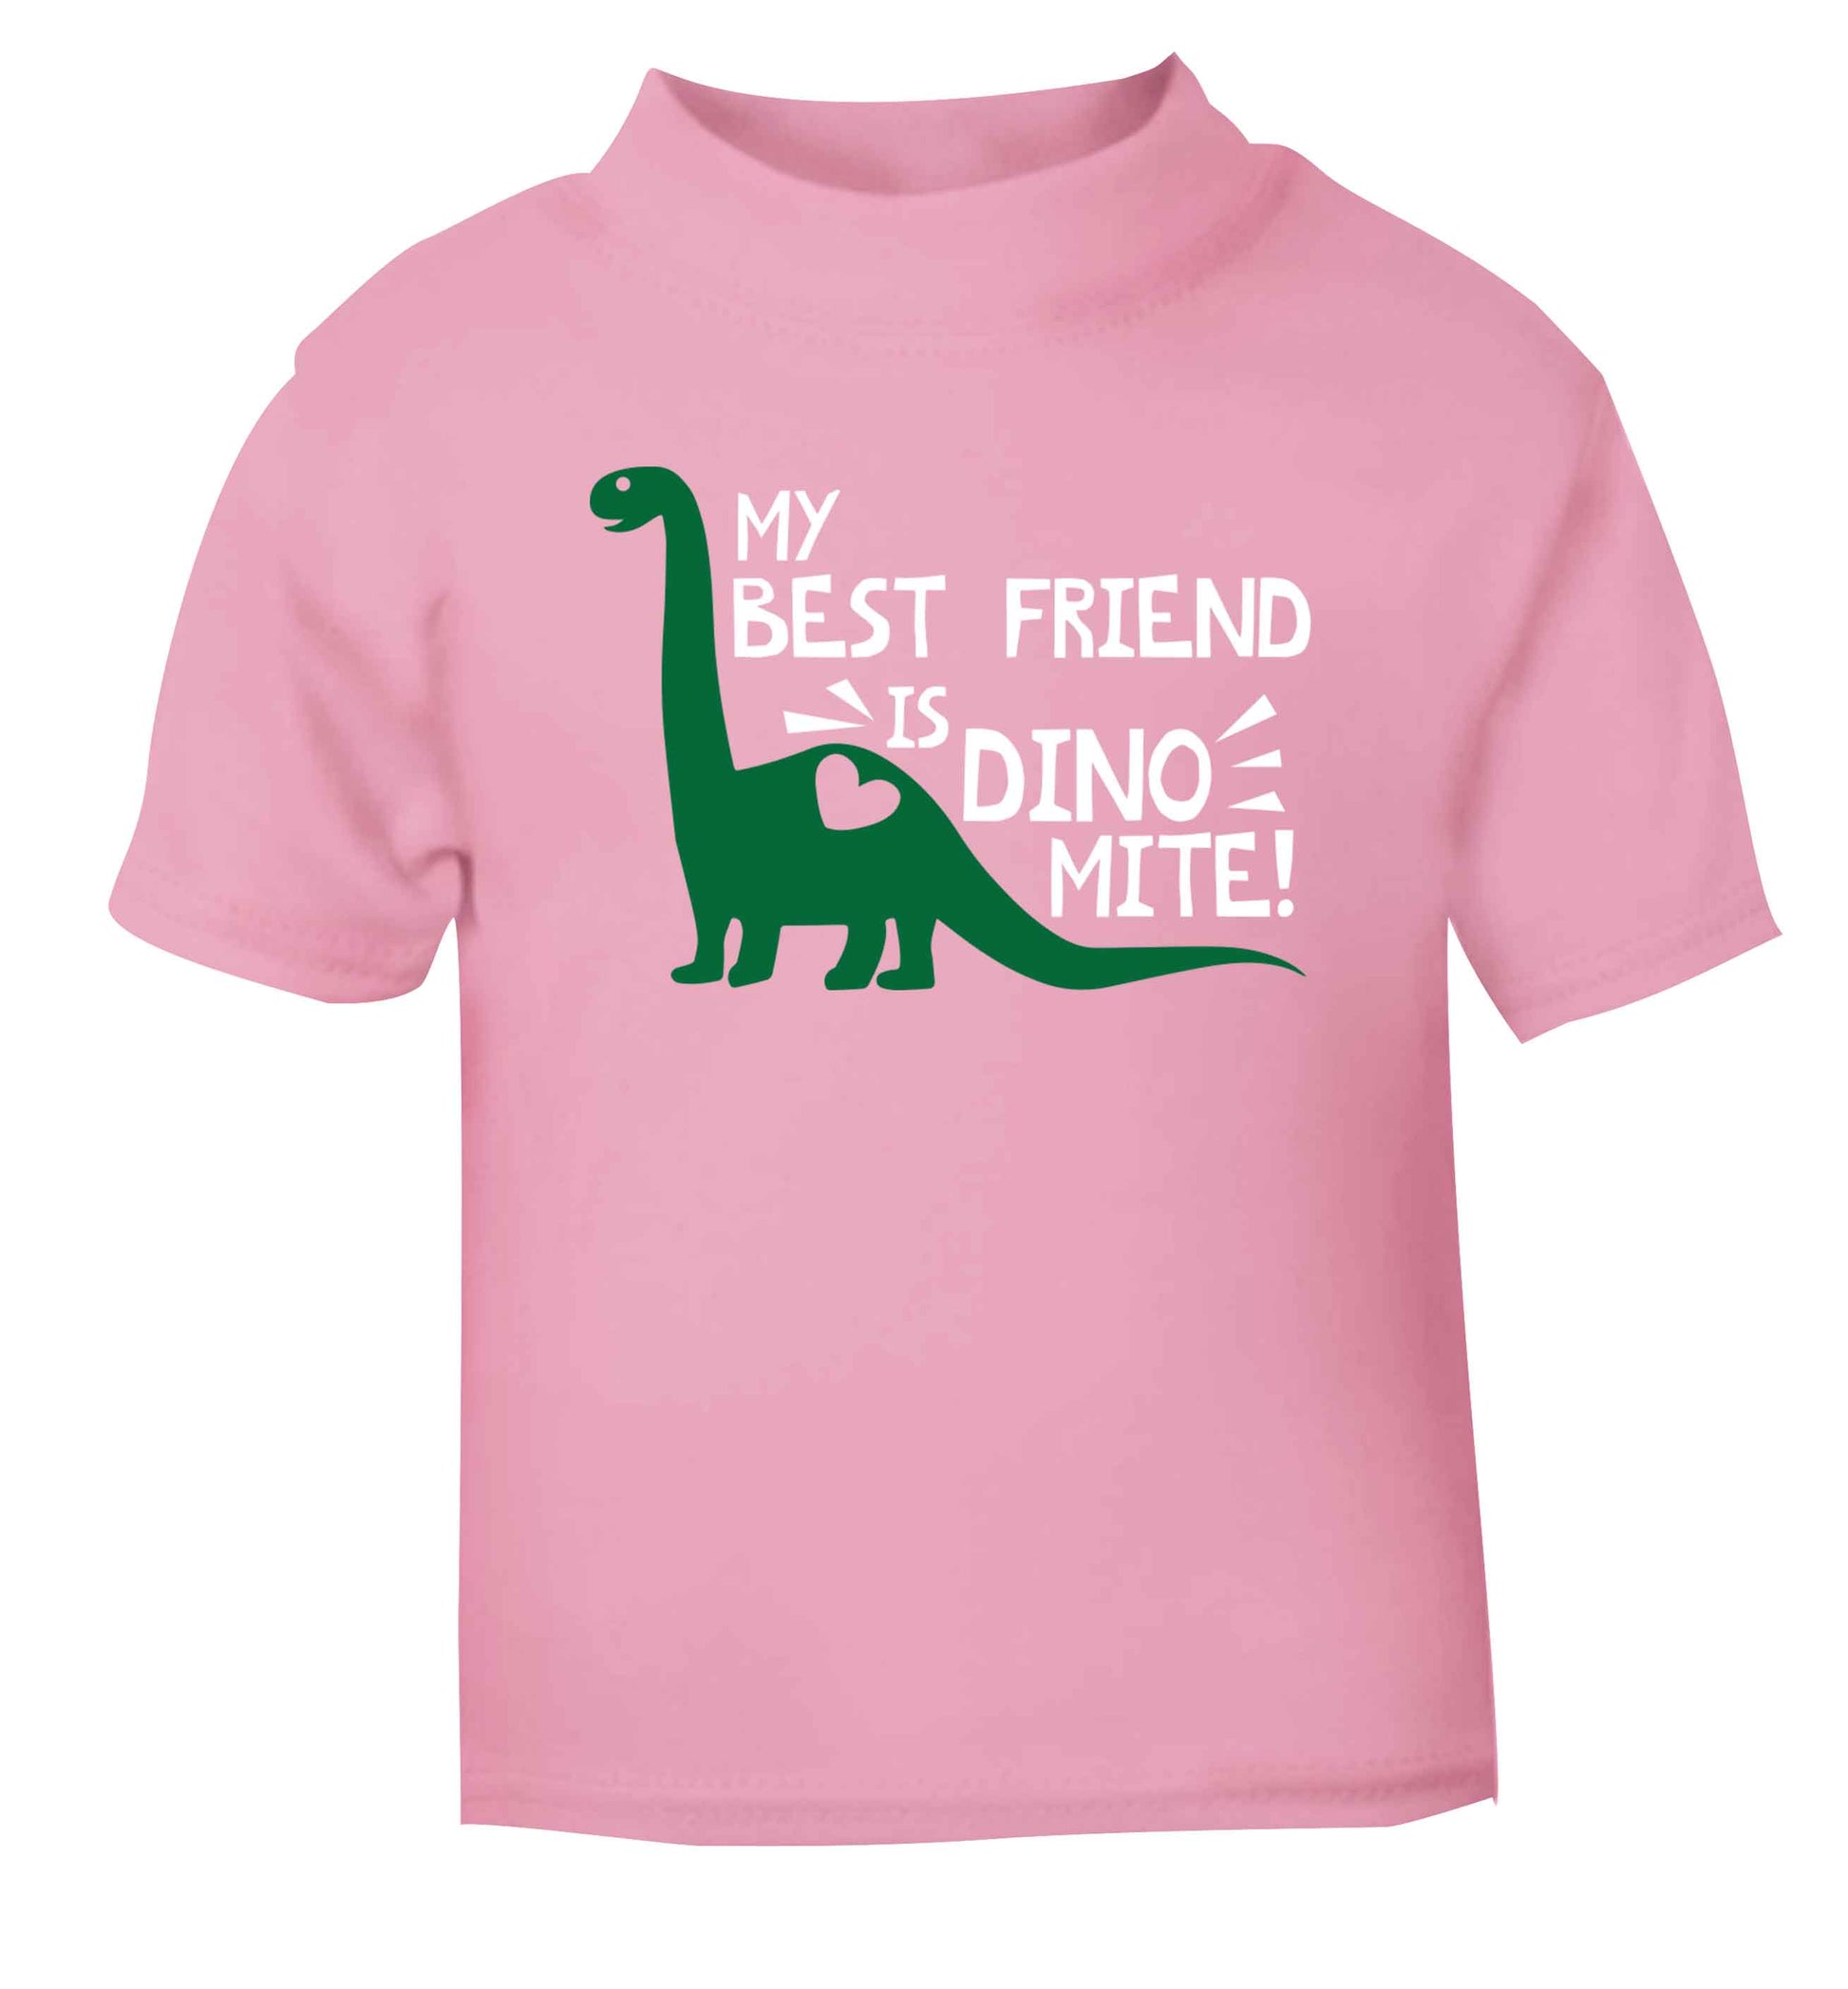 My best friend is dinomite! light pink Baby Toddler Tshirt 2 Years